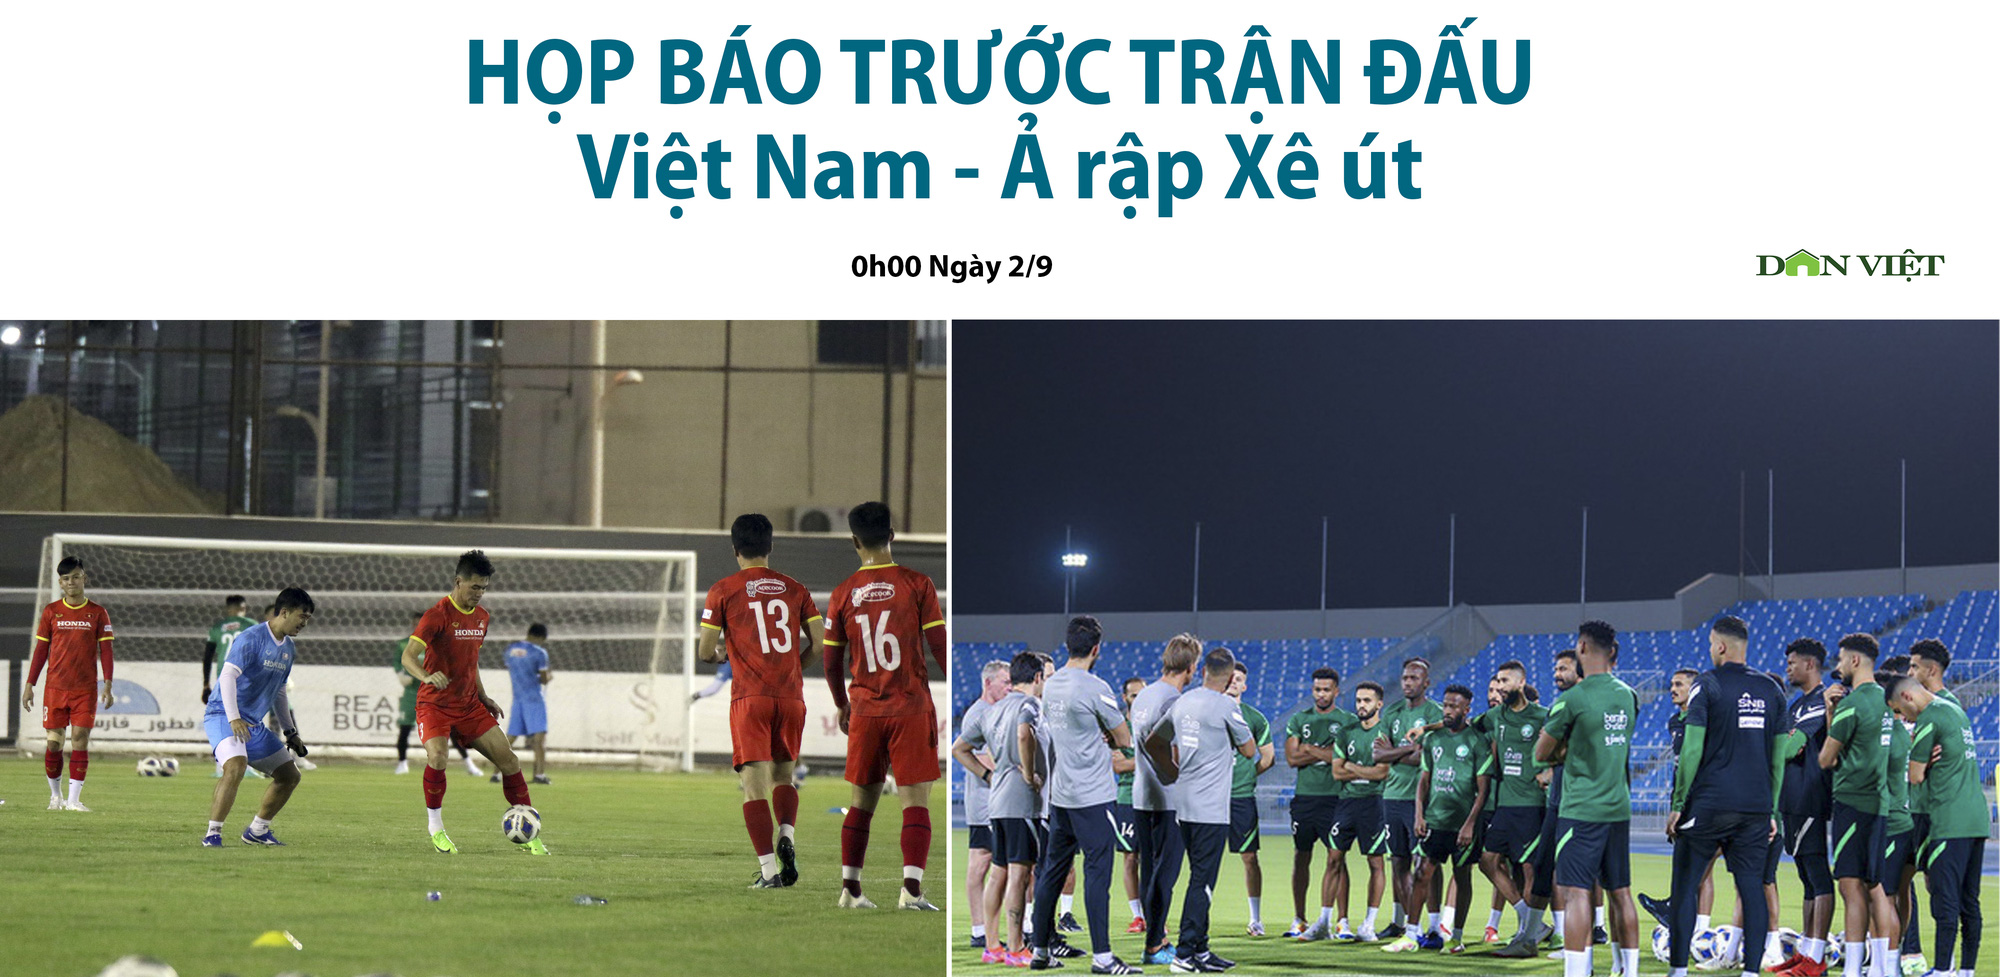 0h ngày 2/9, họp báo trước trận đấu Việt Nam - Ả rập Xê Út, thông tin trực tiếp trên Dân Việt - Ảnh 1.